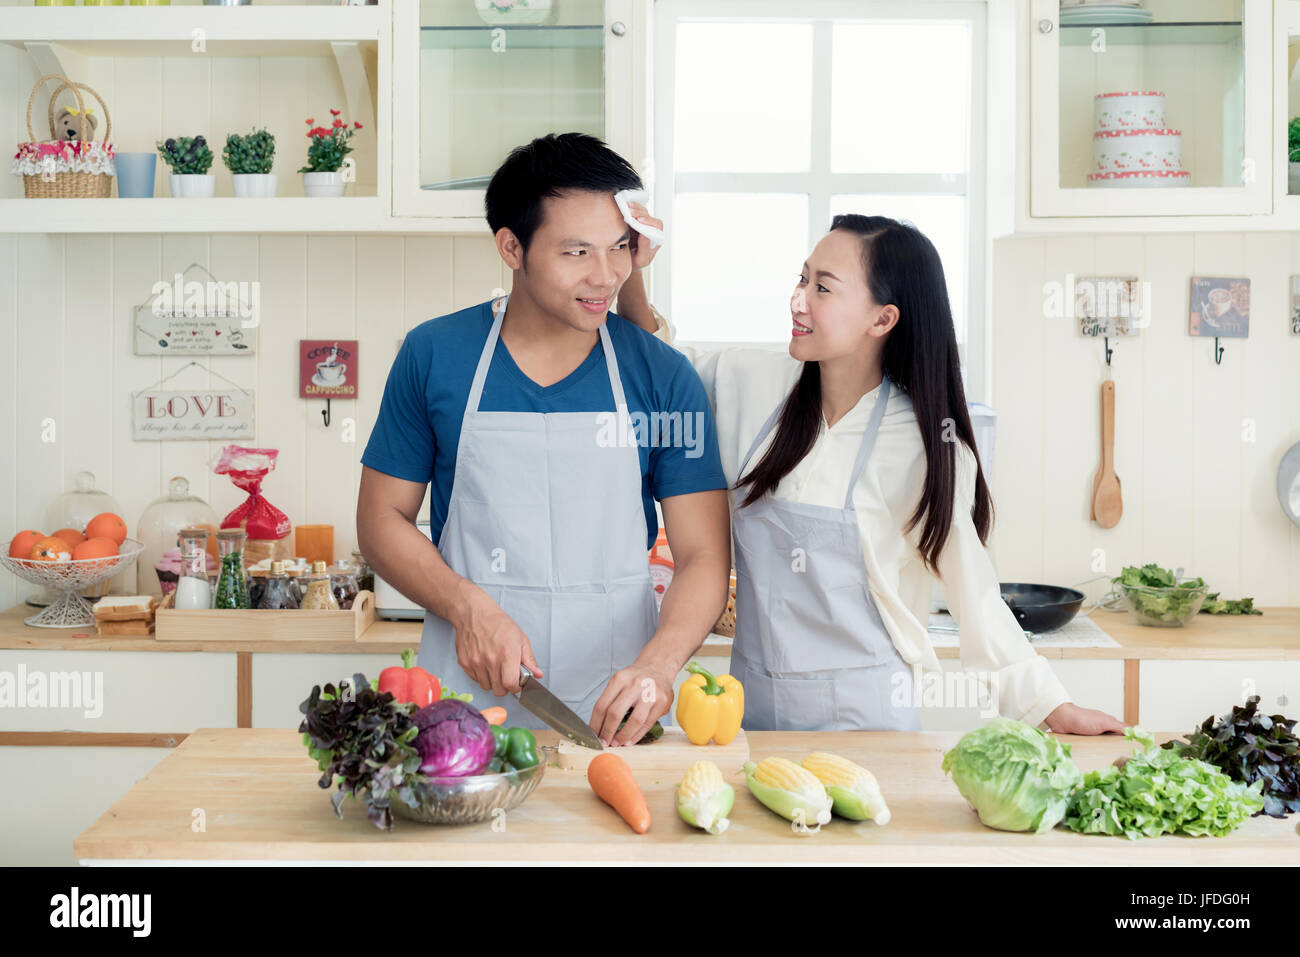 Asiatischen schöne junge Frau Mann trocken Schweiß aus dem Gesicht in die Küche zu Hause zu helfen. Glückliche Liebe paar Konzept. Stockfoto